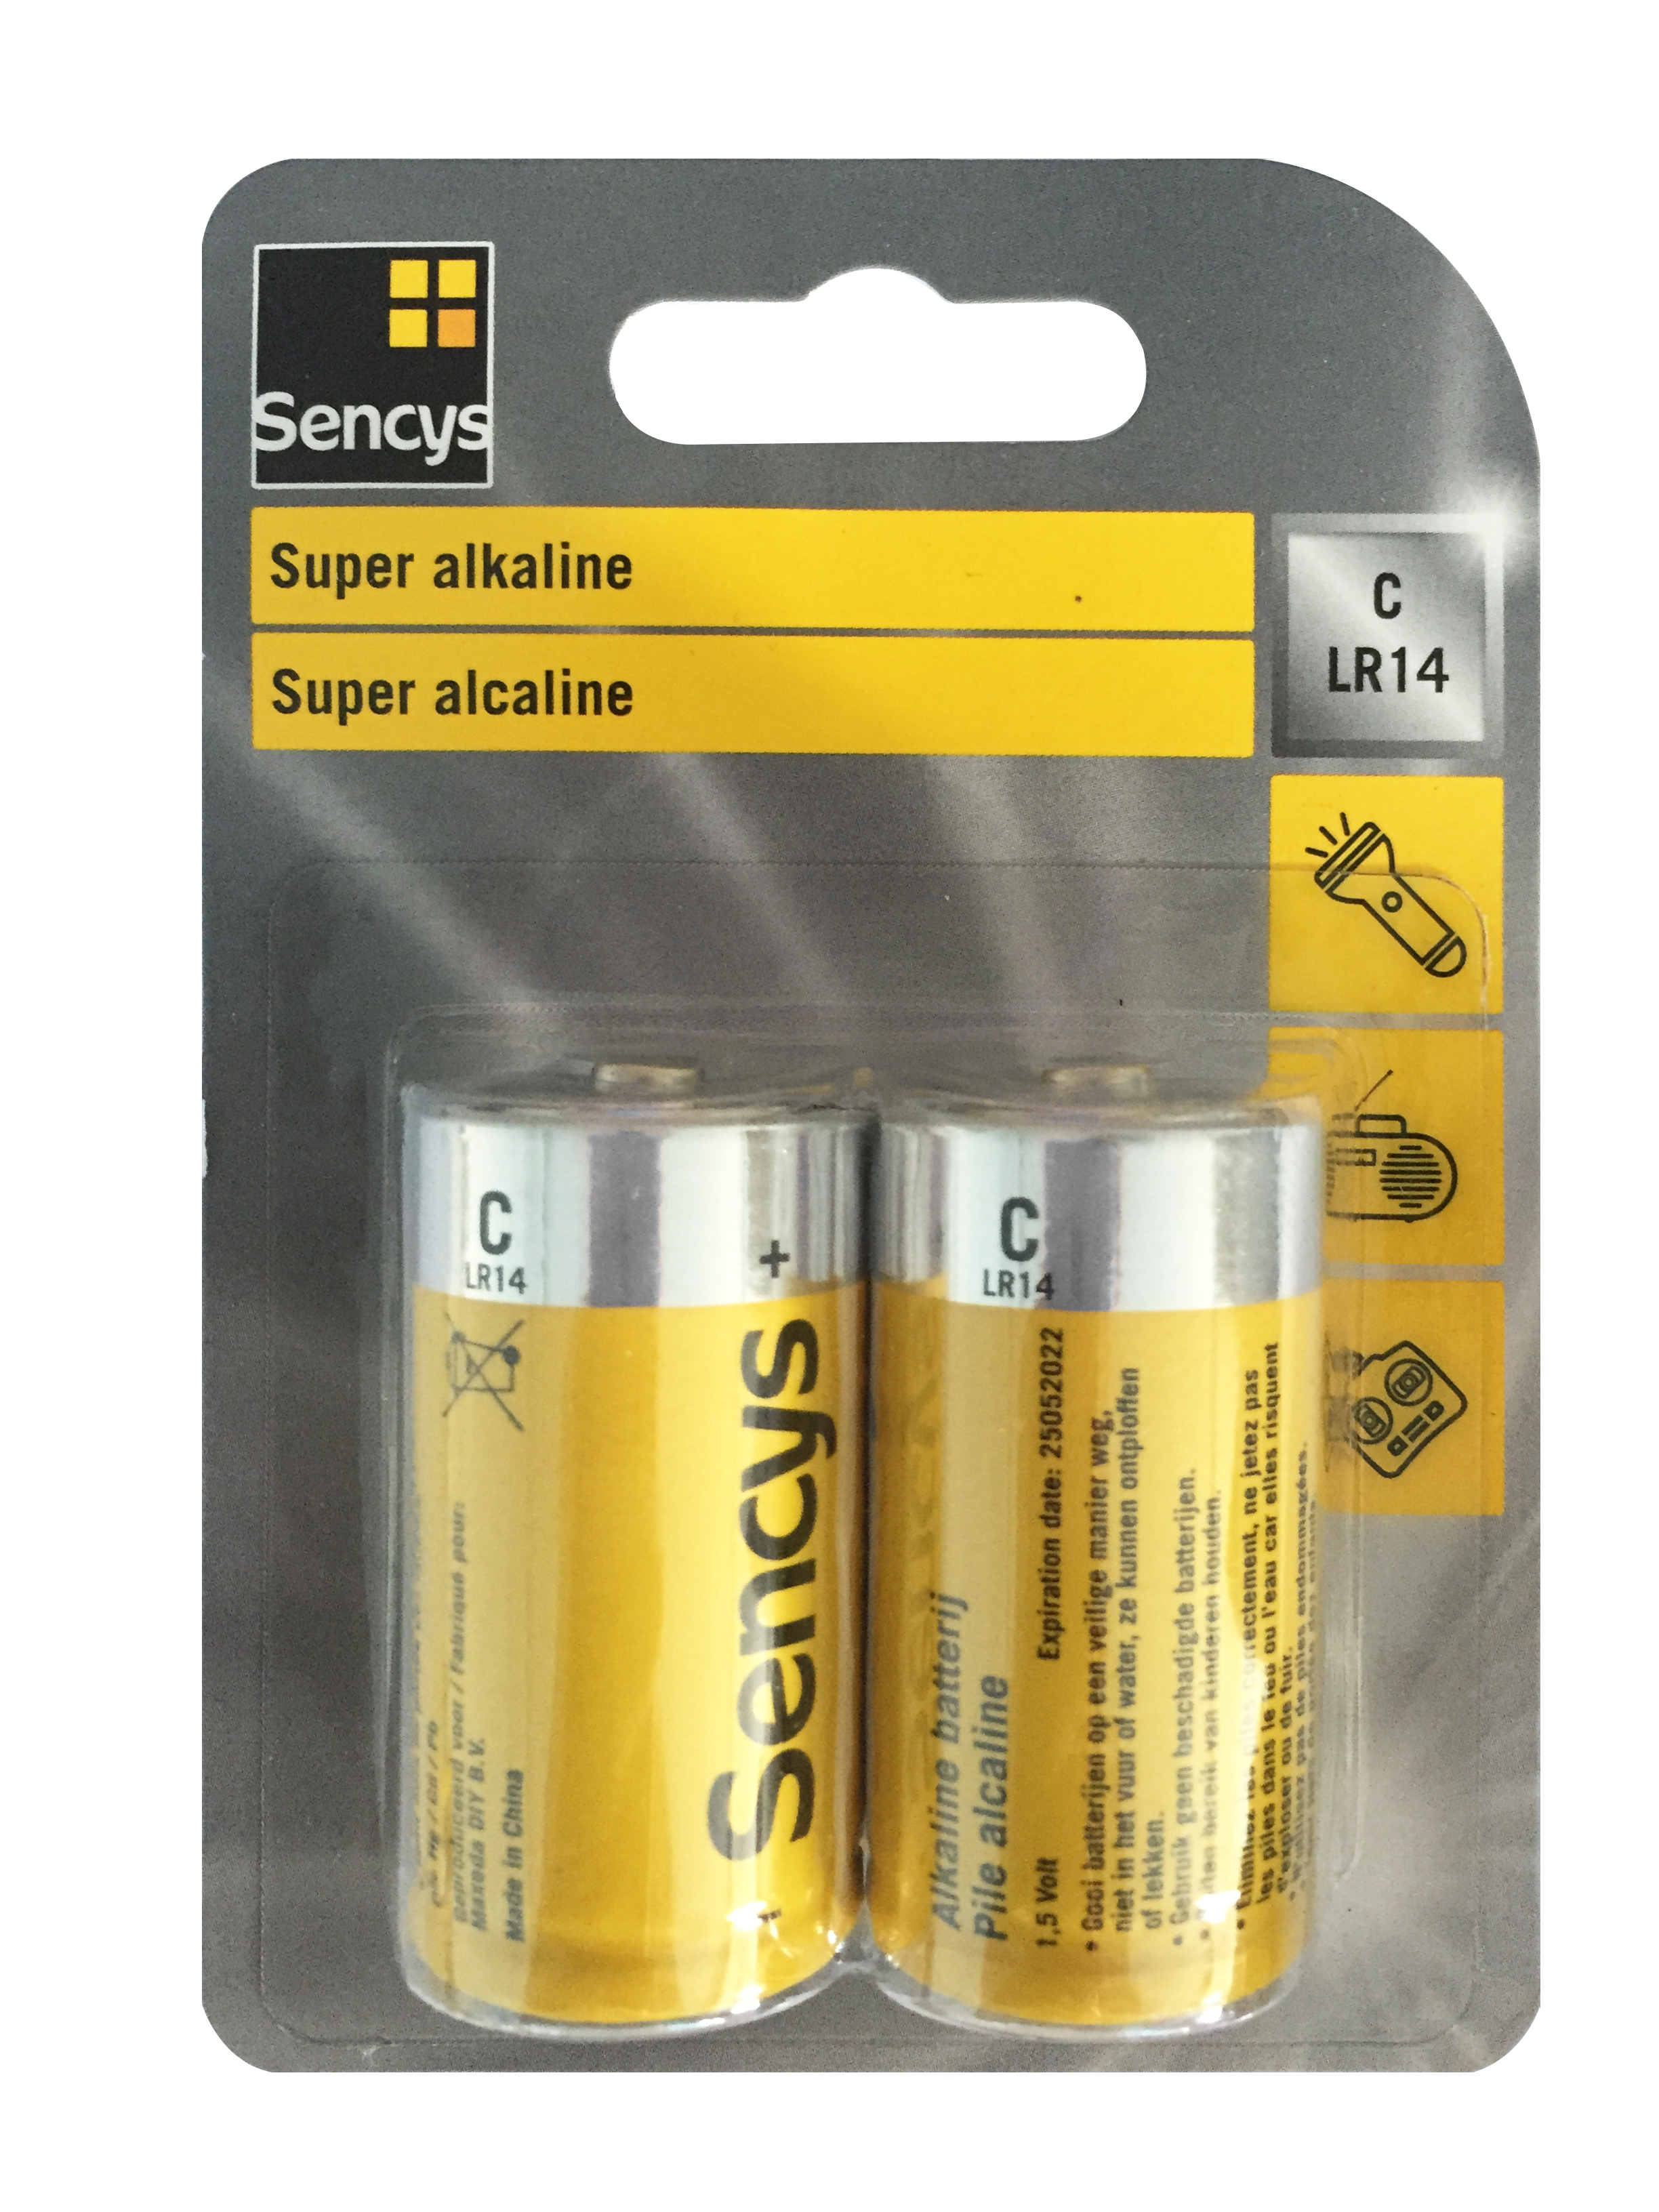 Decoderen Samenhangend Populair Sencys super alkaline batterij C/LR14 2 stuks